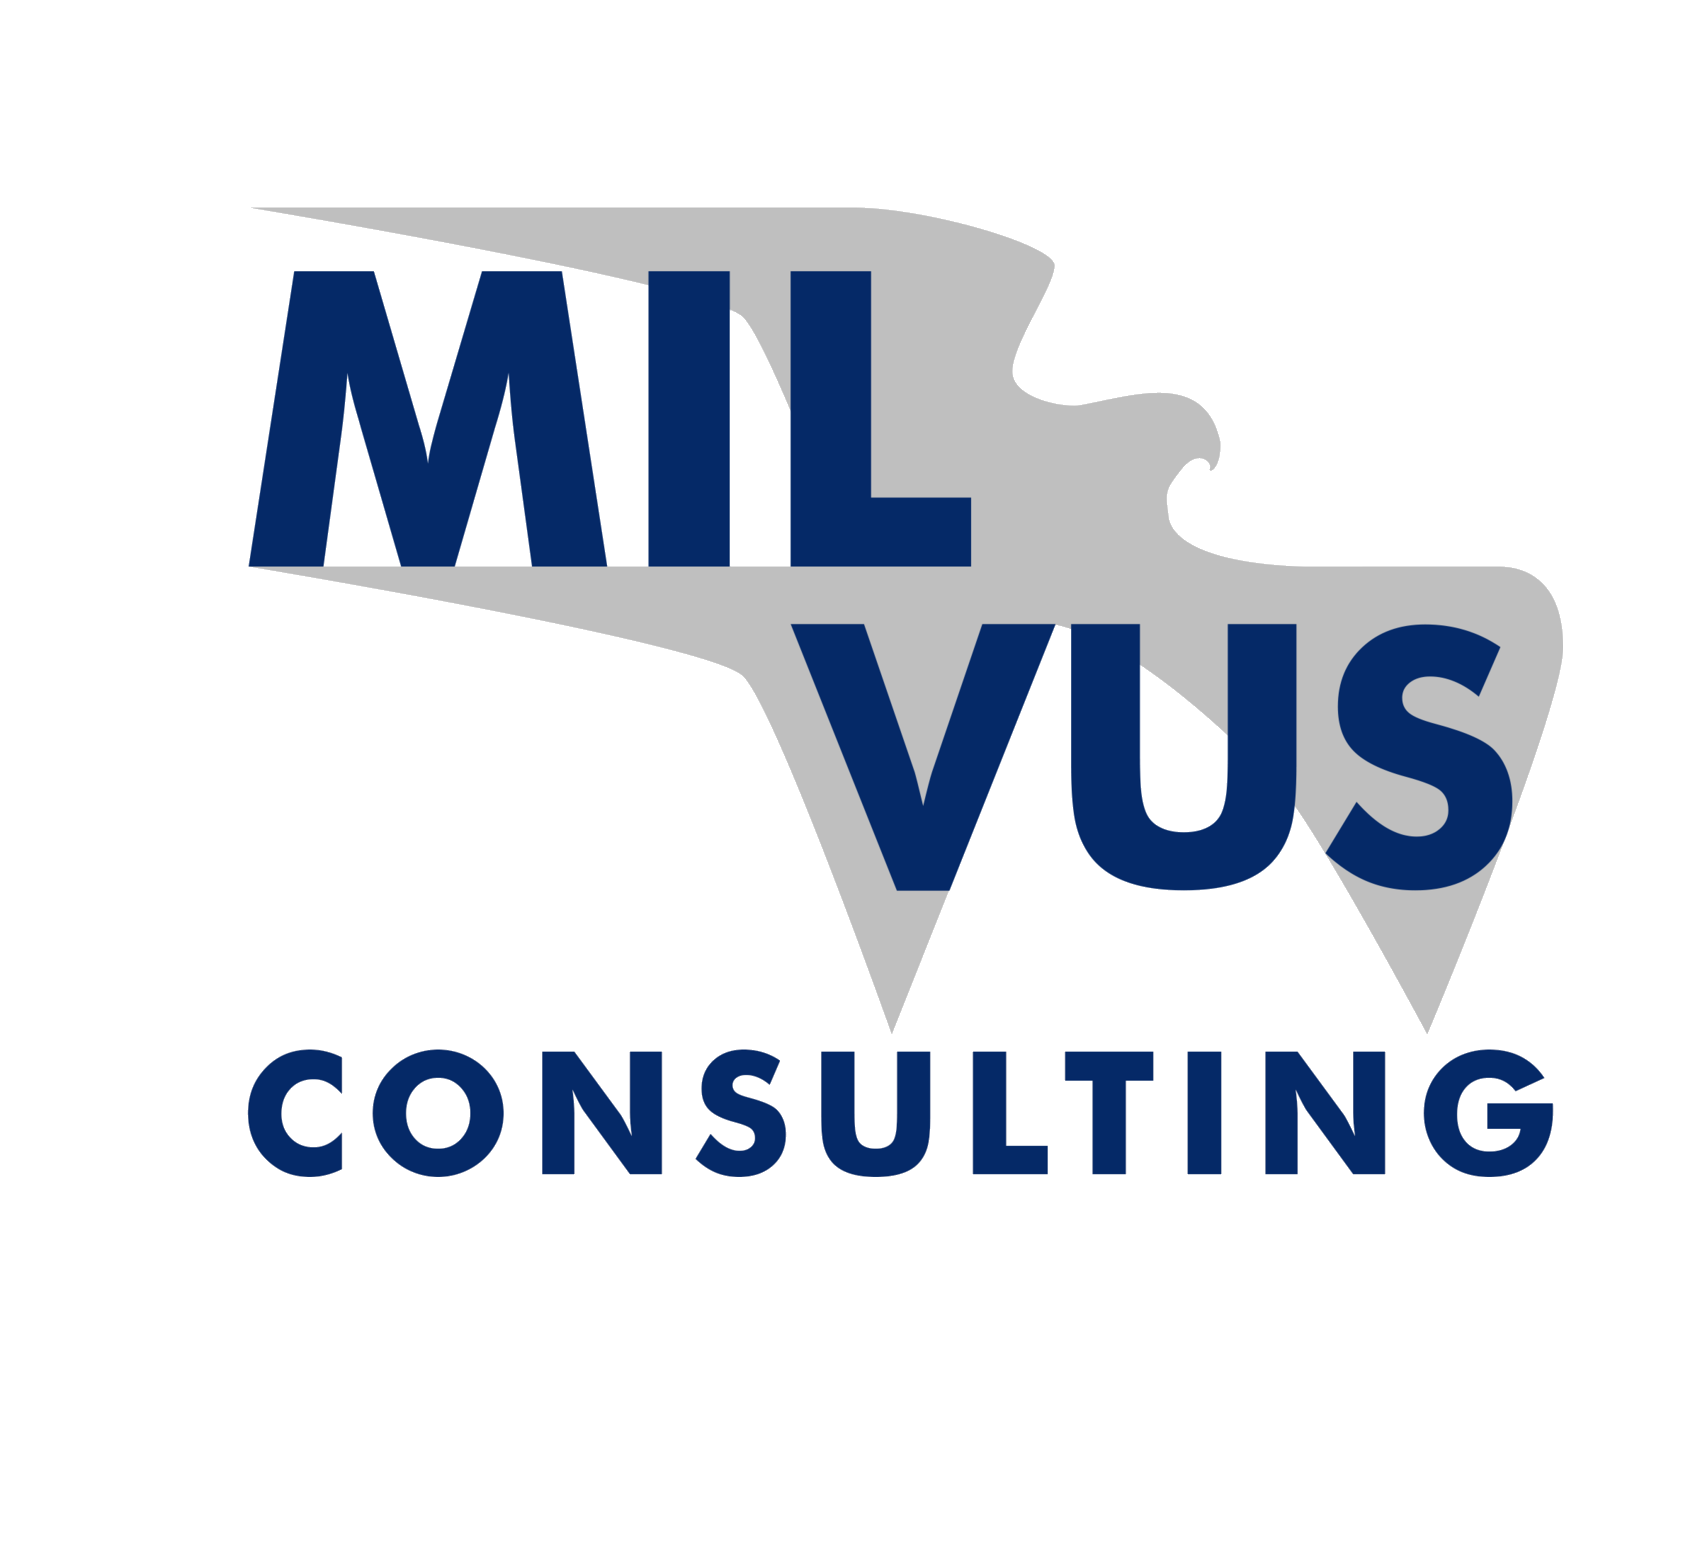 Milvus consulting